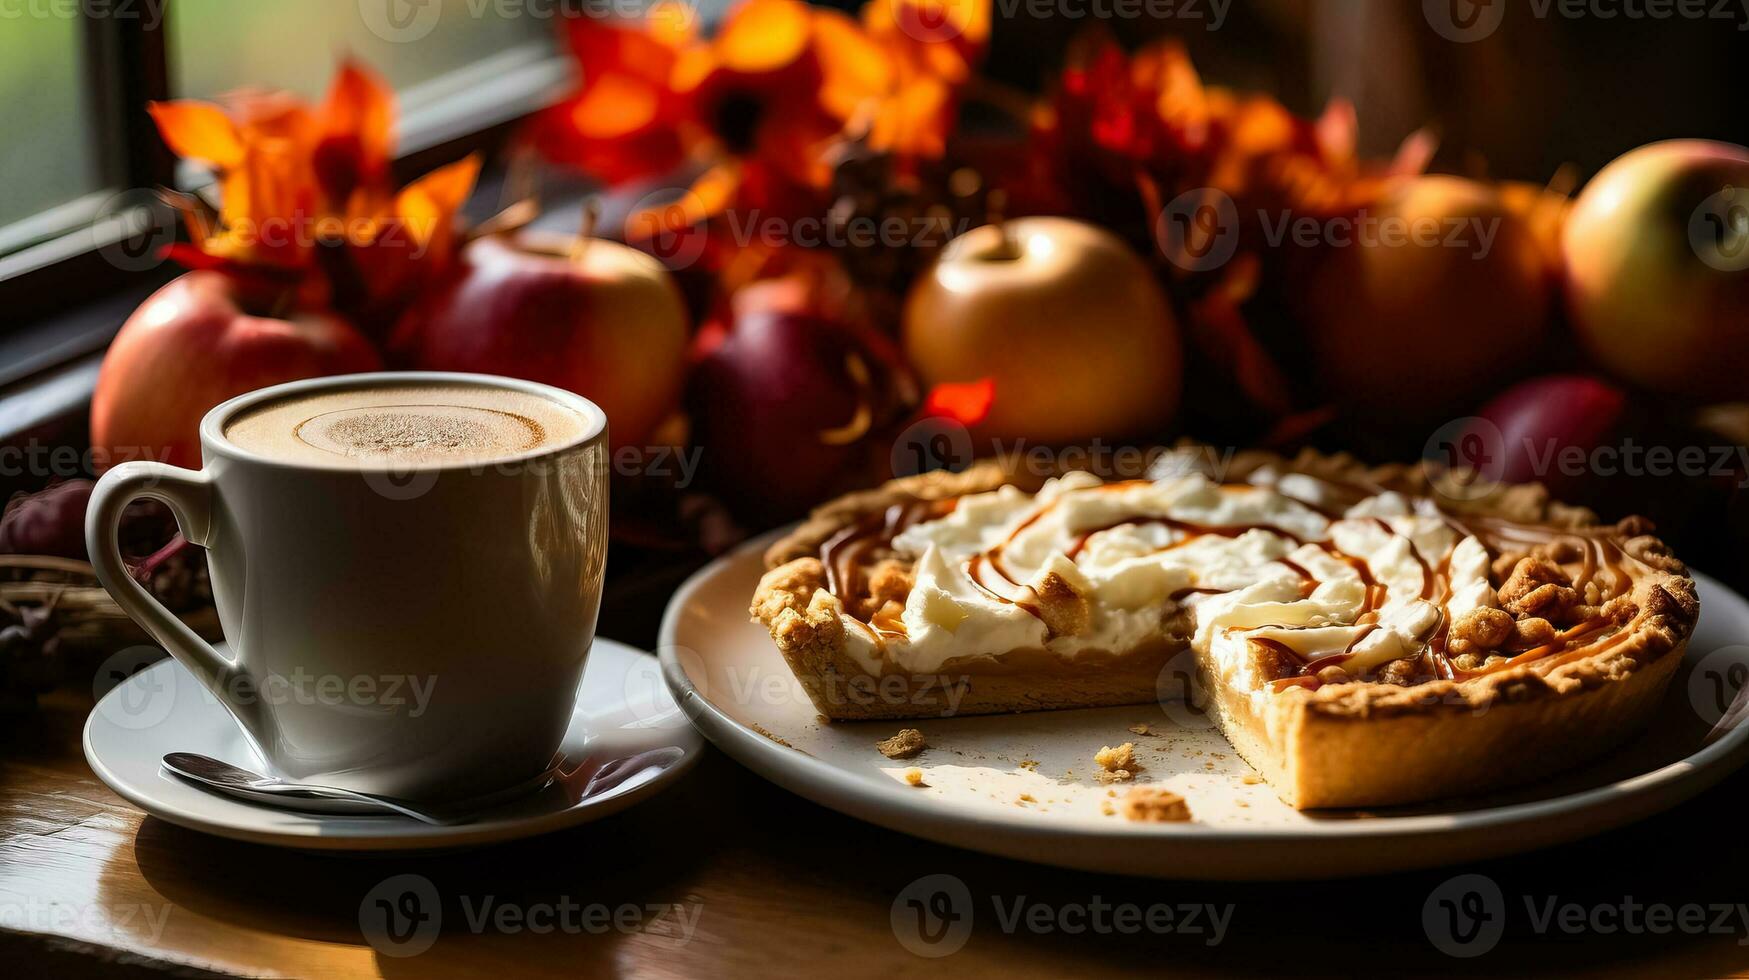 aromatisk ångande pumpa latte och en tallrik av ljuvlig caramelized äpple paj på en mysigt hösttema tabell foto